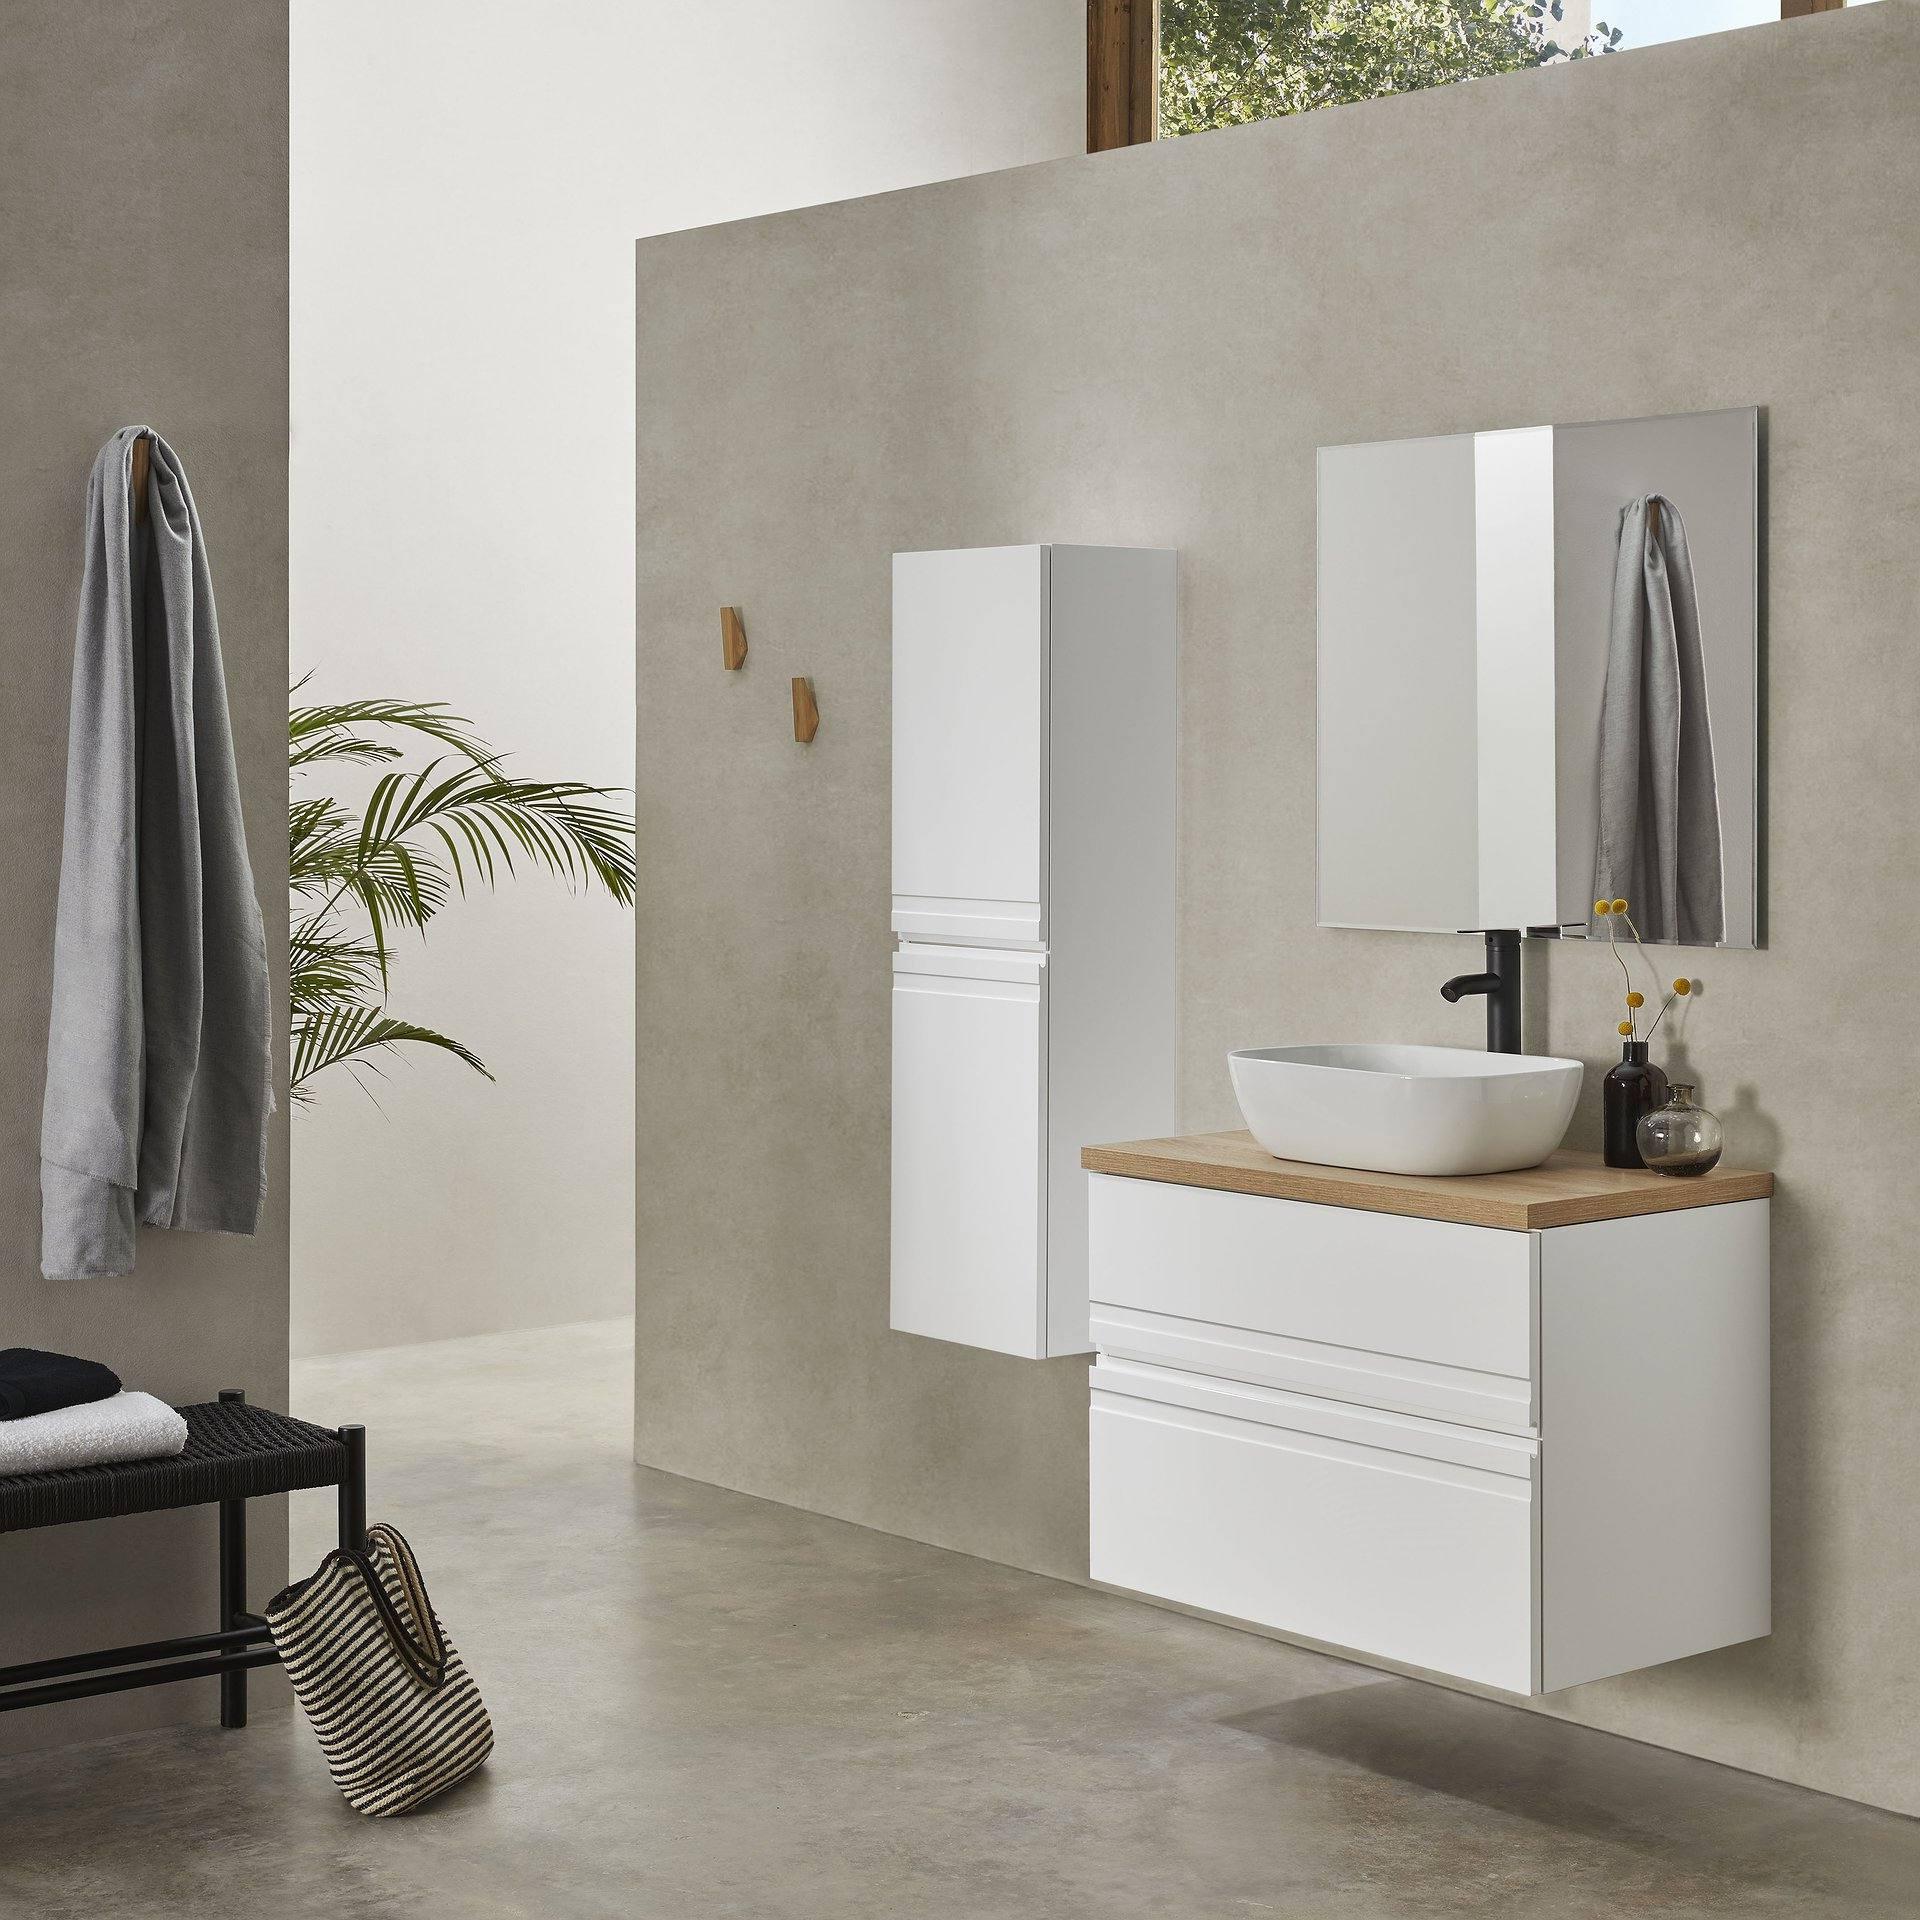 mueble de baño dos cajones y estantería, lavabo sobreencimera, espejo  redondo